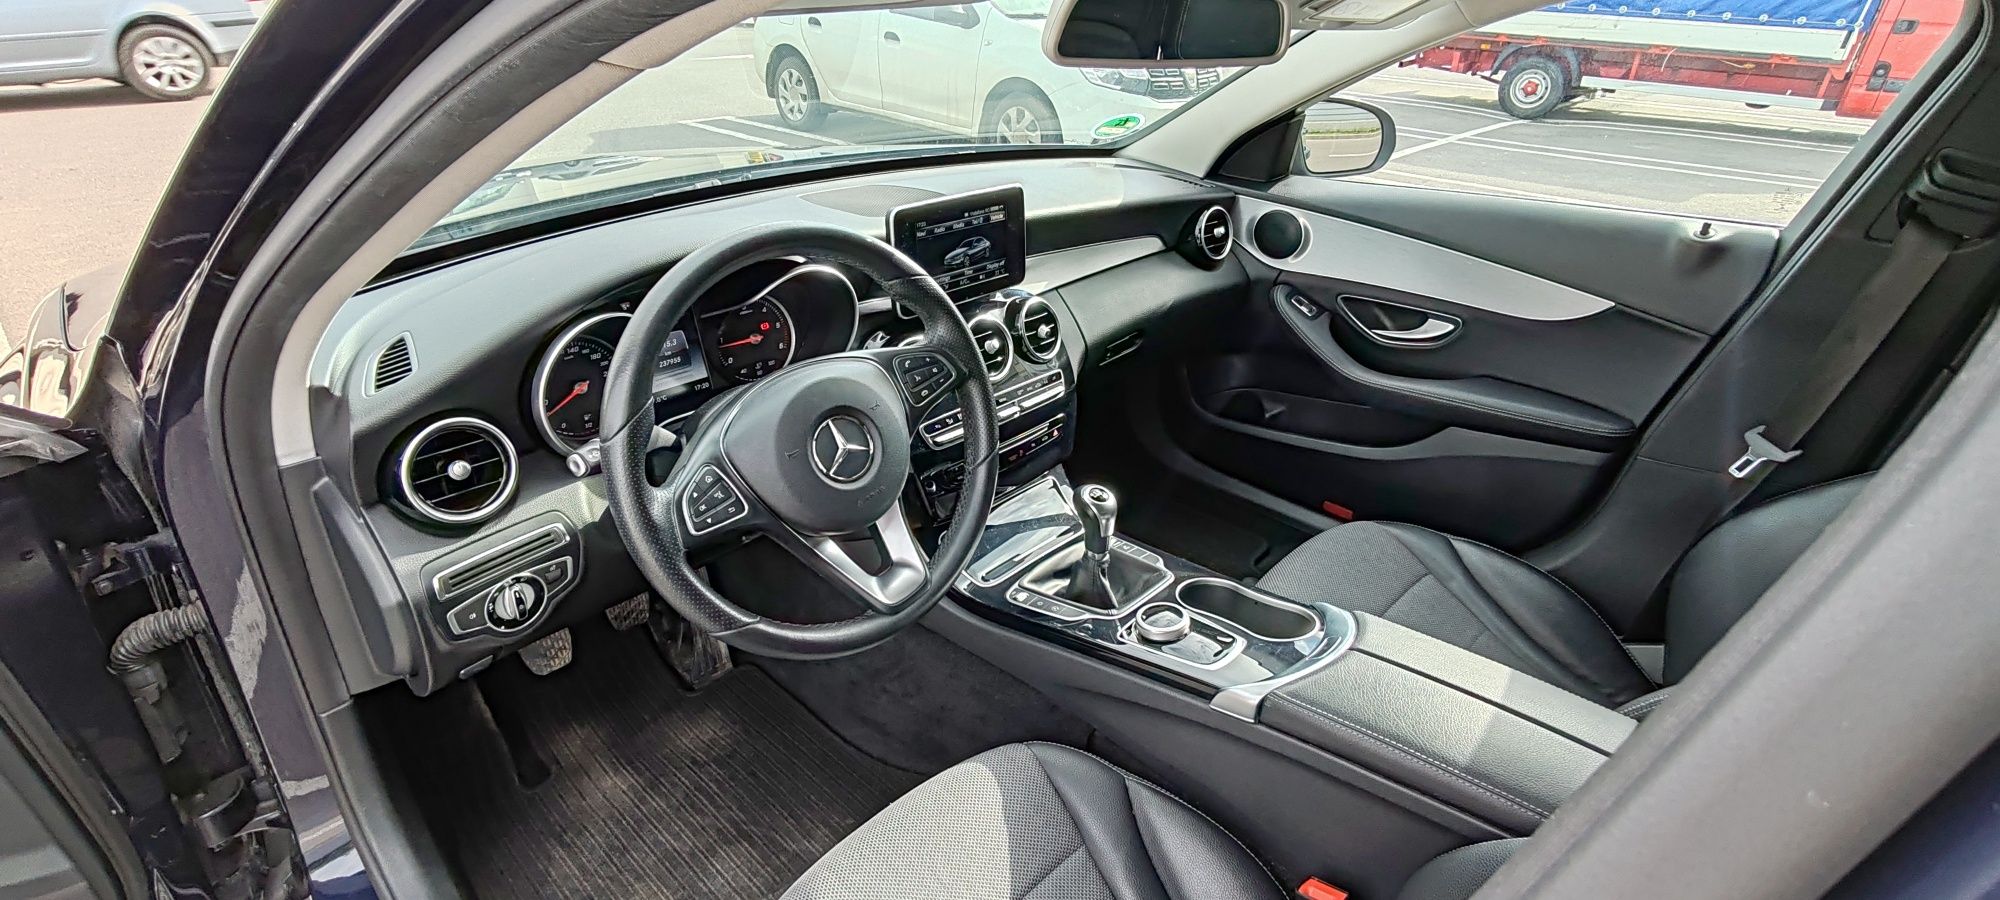 Mercedes-Benz c220